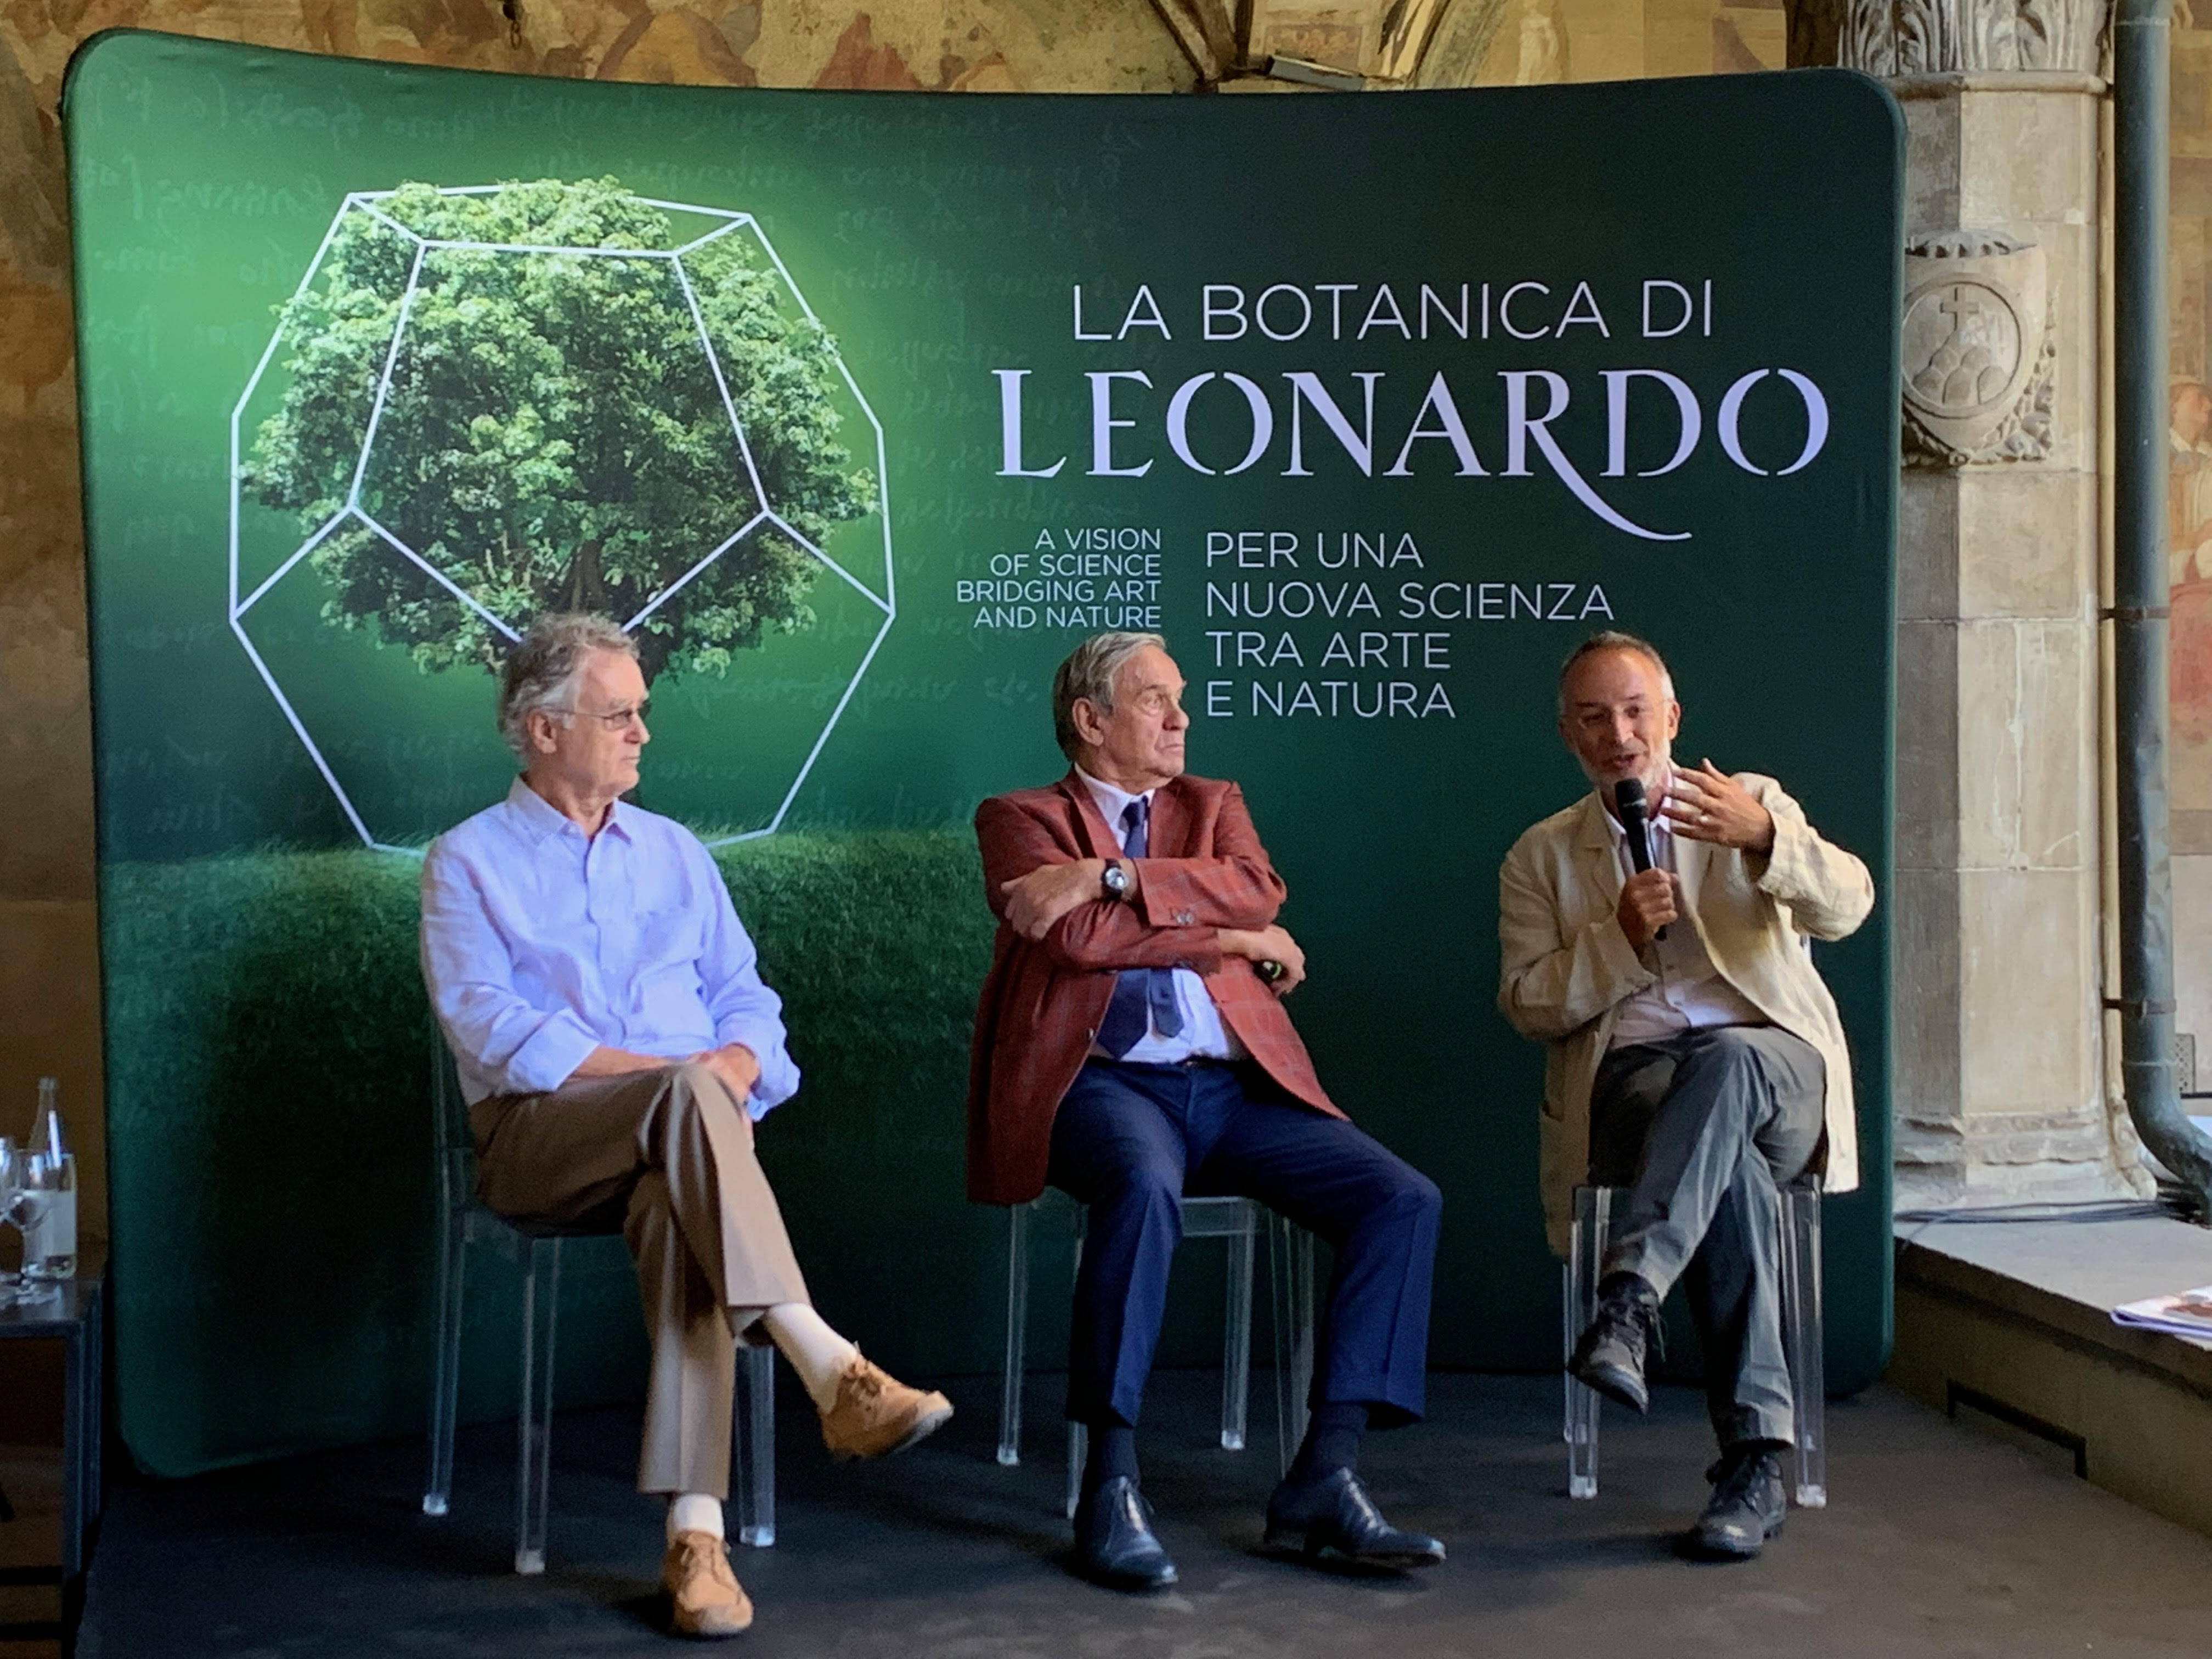 Il Leonardo pensatore sistemico nella mostra sulla botanica